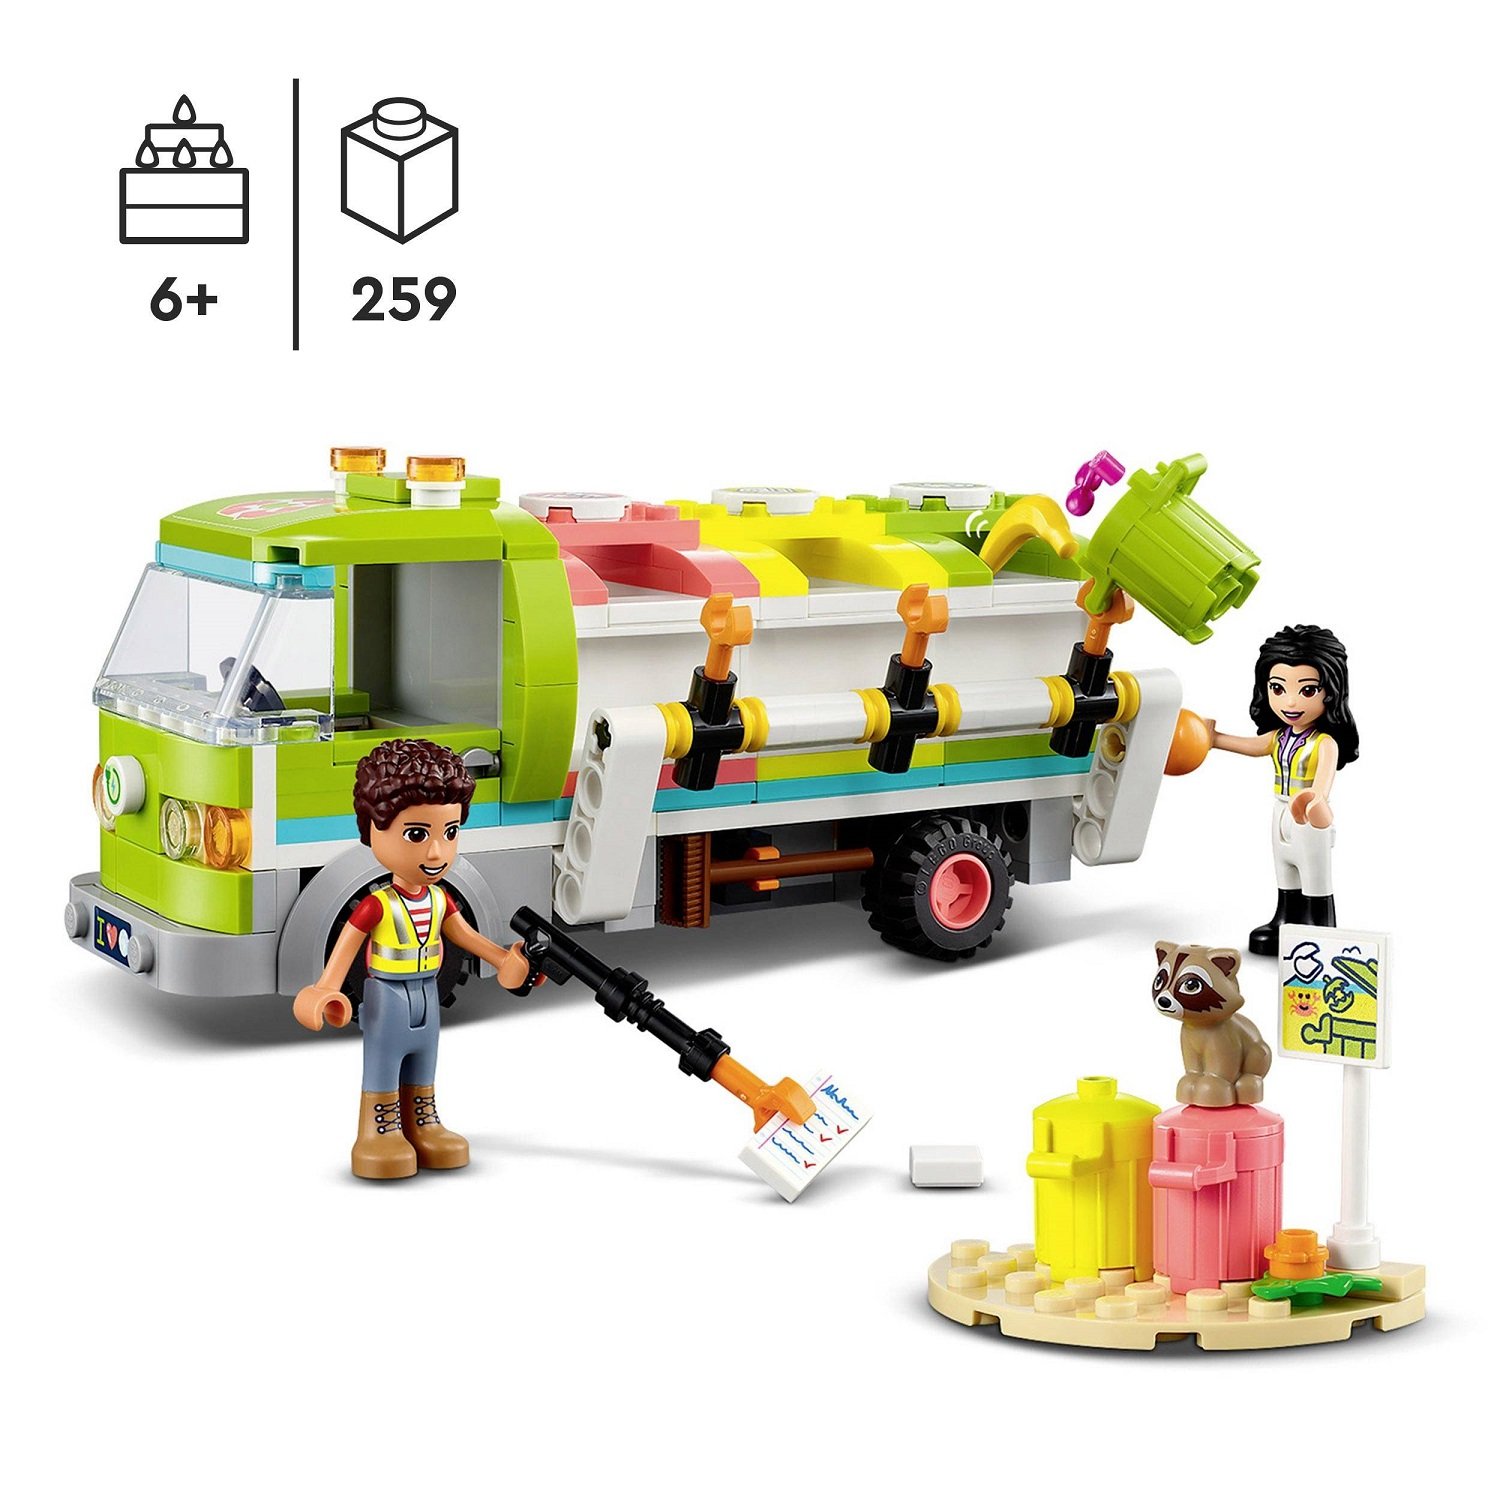 Конструктор LEGO Friends Мусороперерабатывающий грузовик, 259 деталей (41712) - фото 3